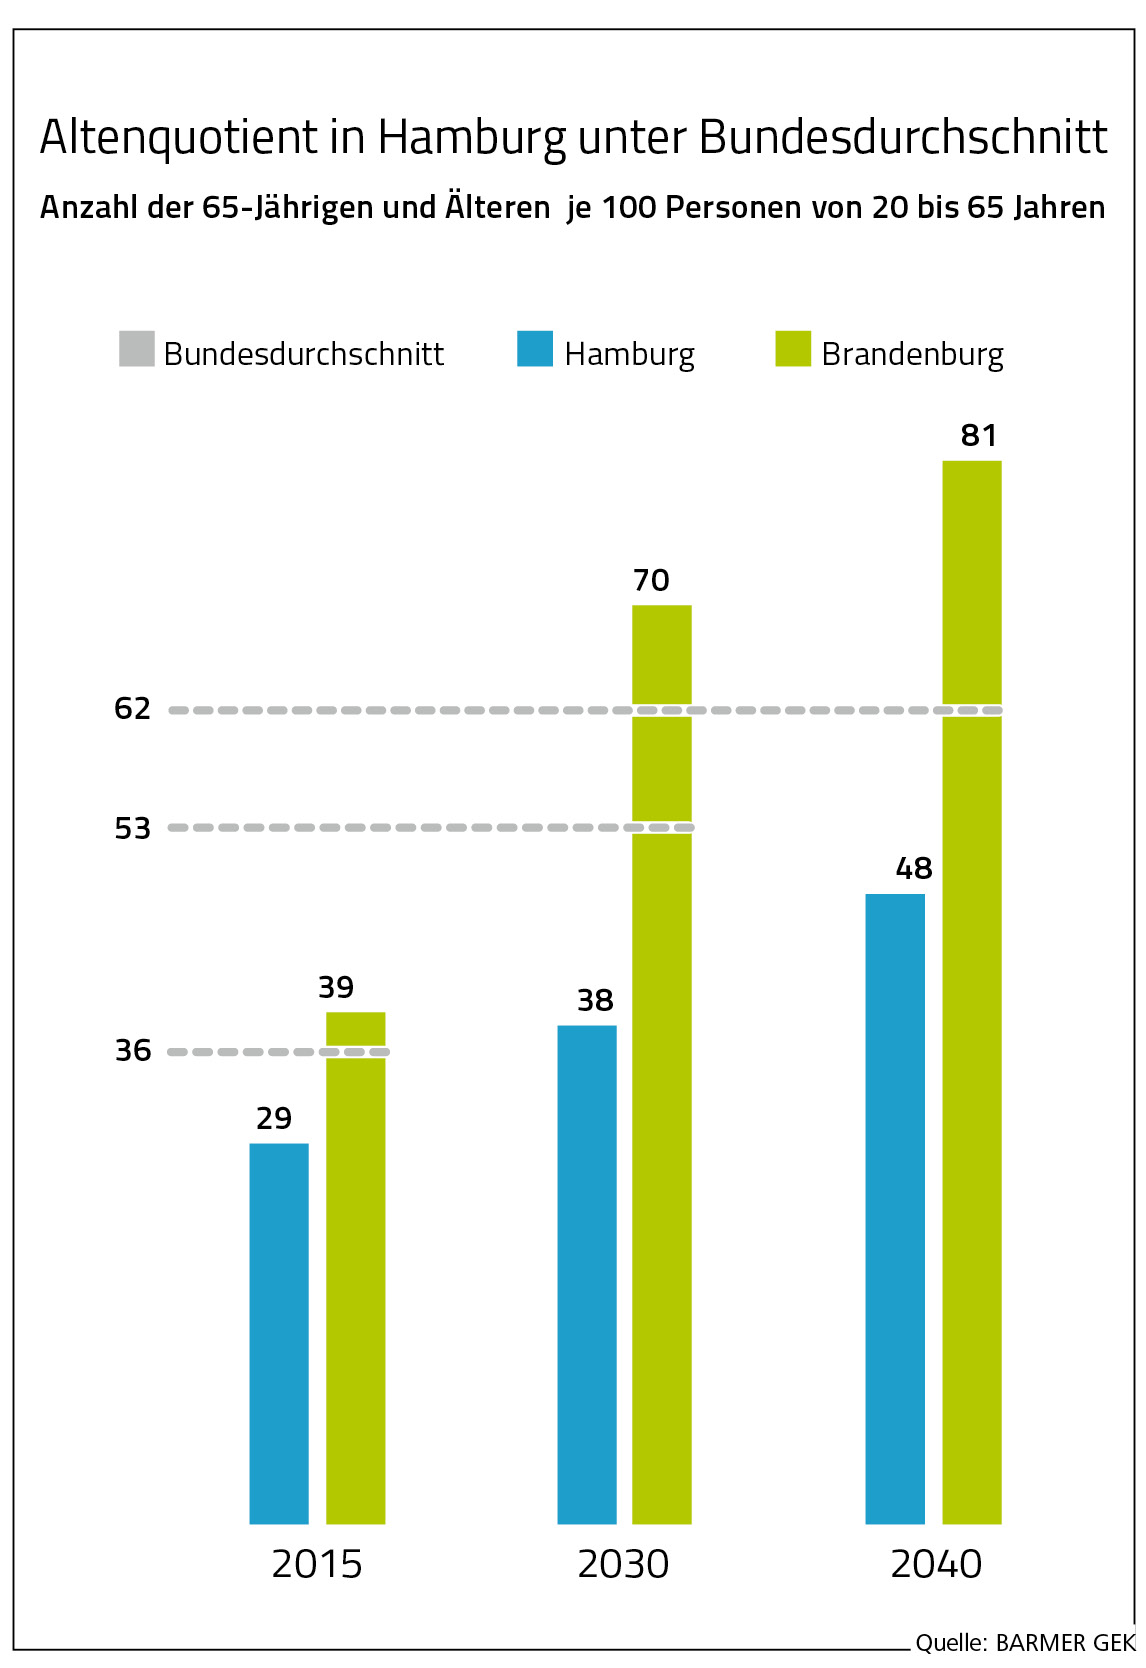 Altenquotient in Hamburg unter Bundesdurchschnitt